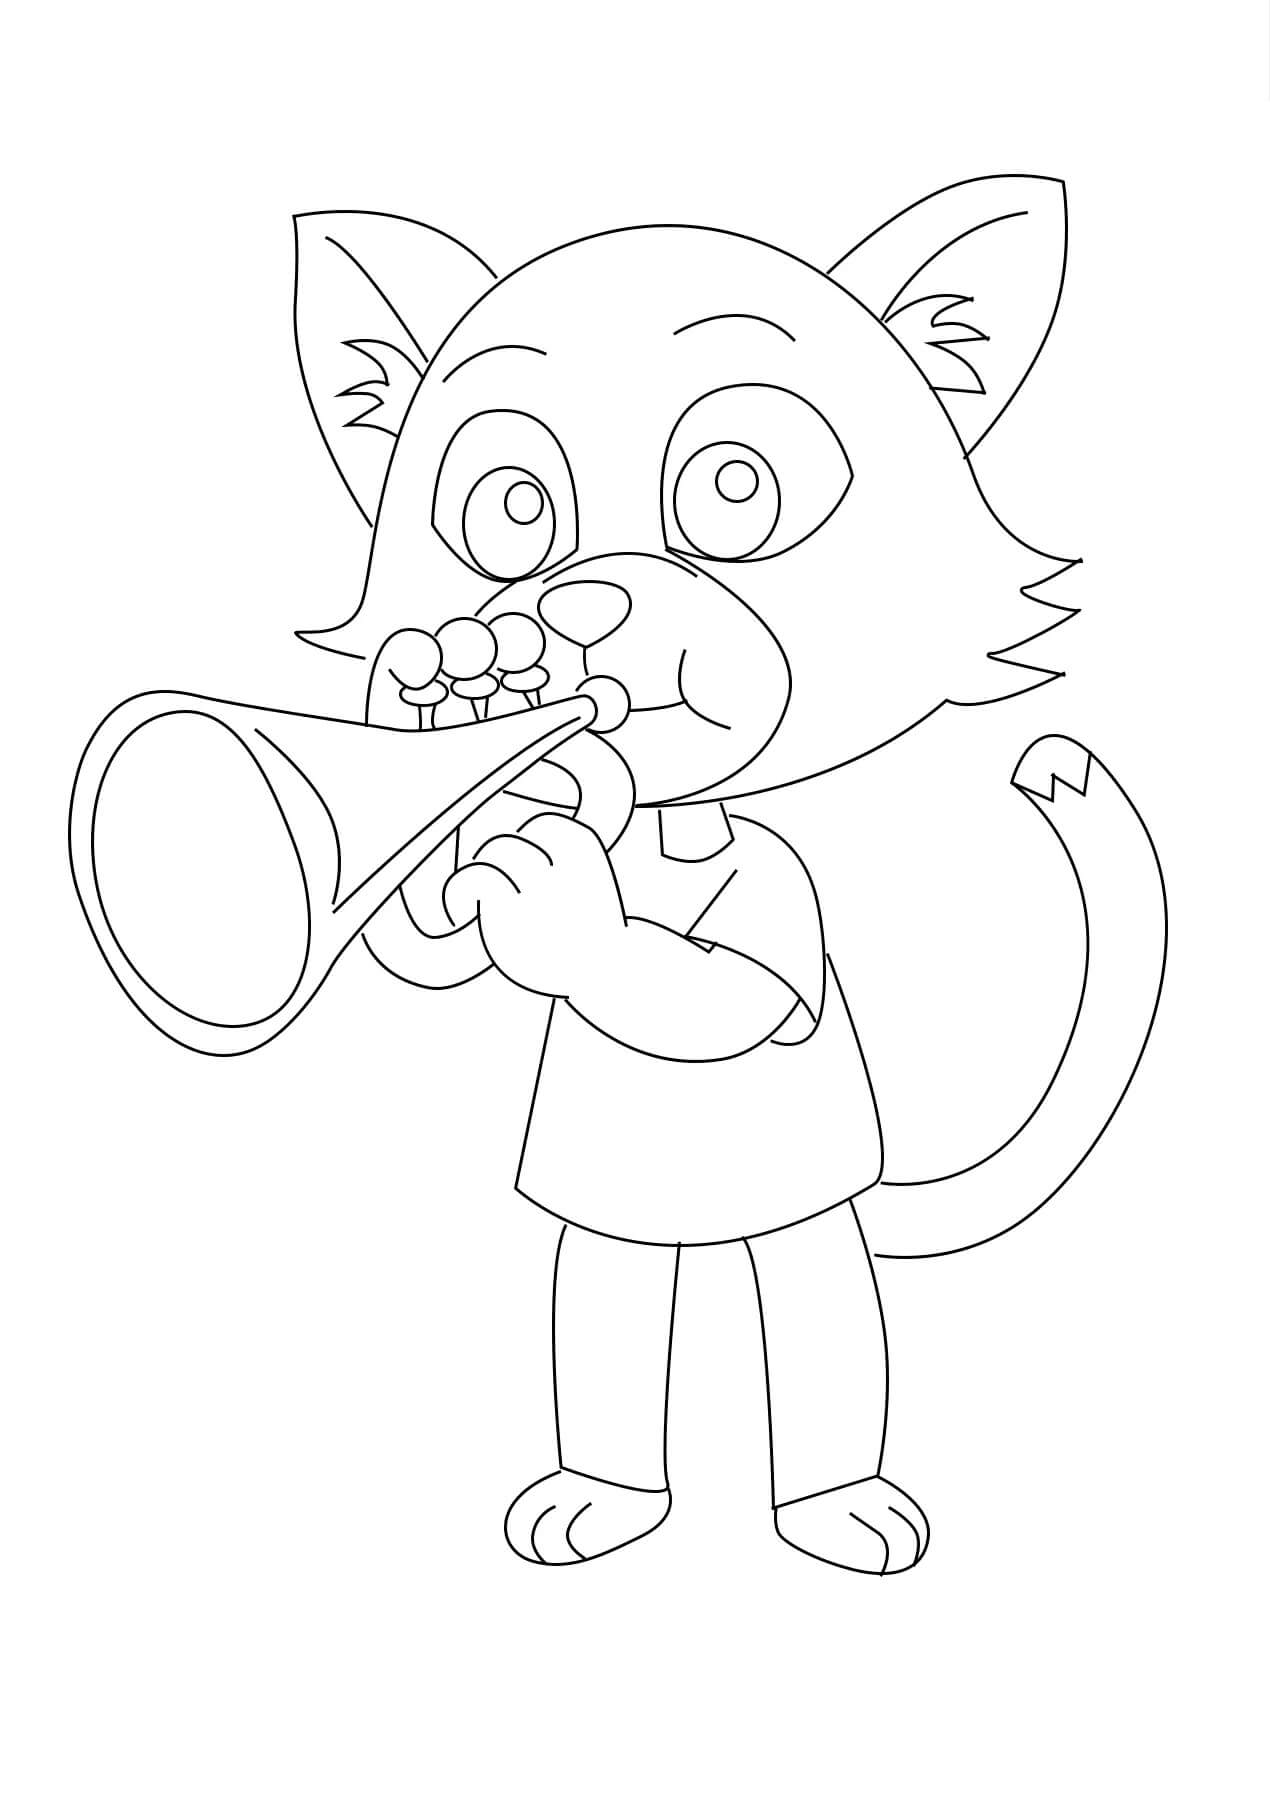 트럼펫을 연주하는 고양이 coloring page